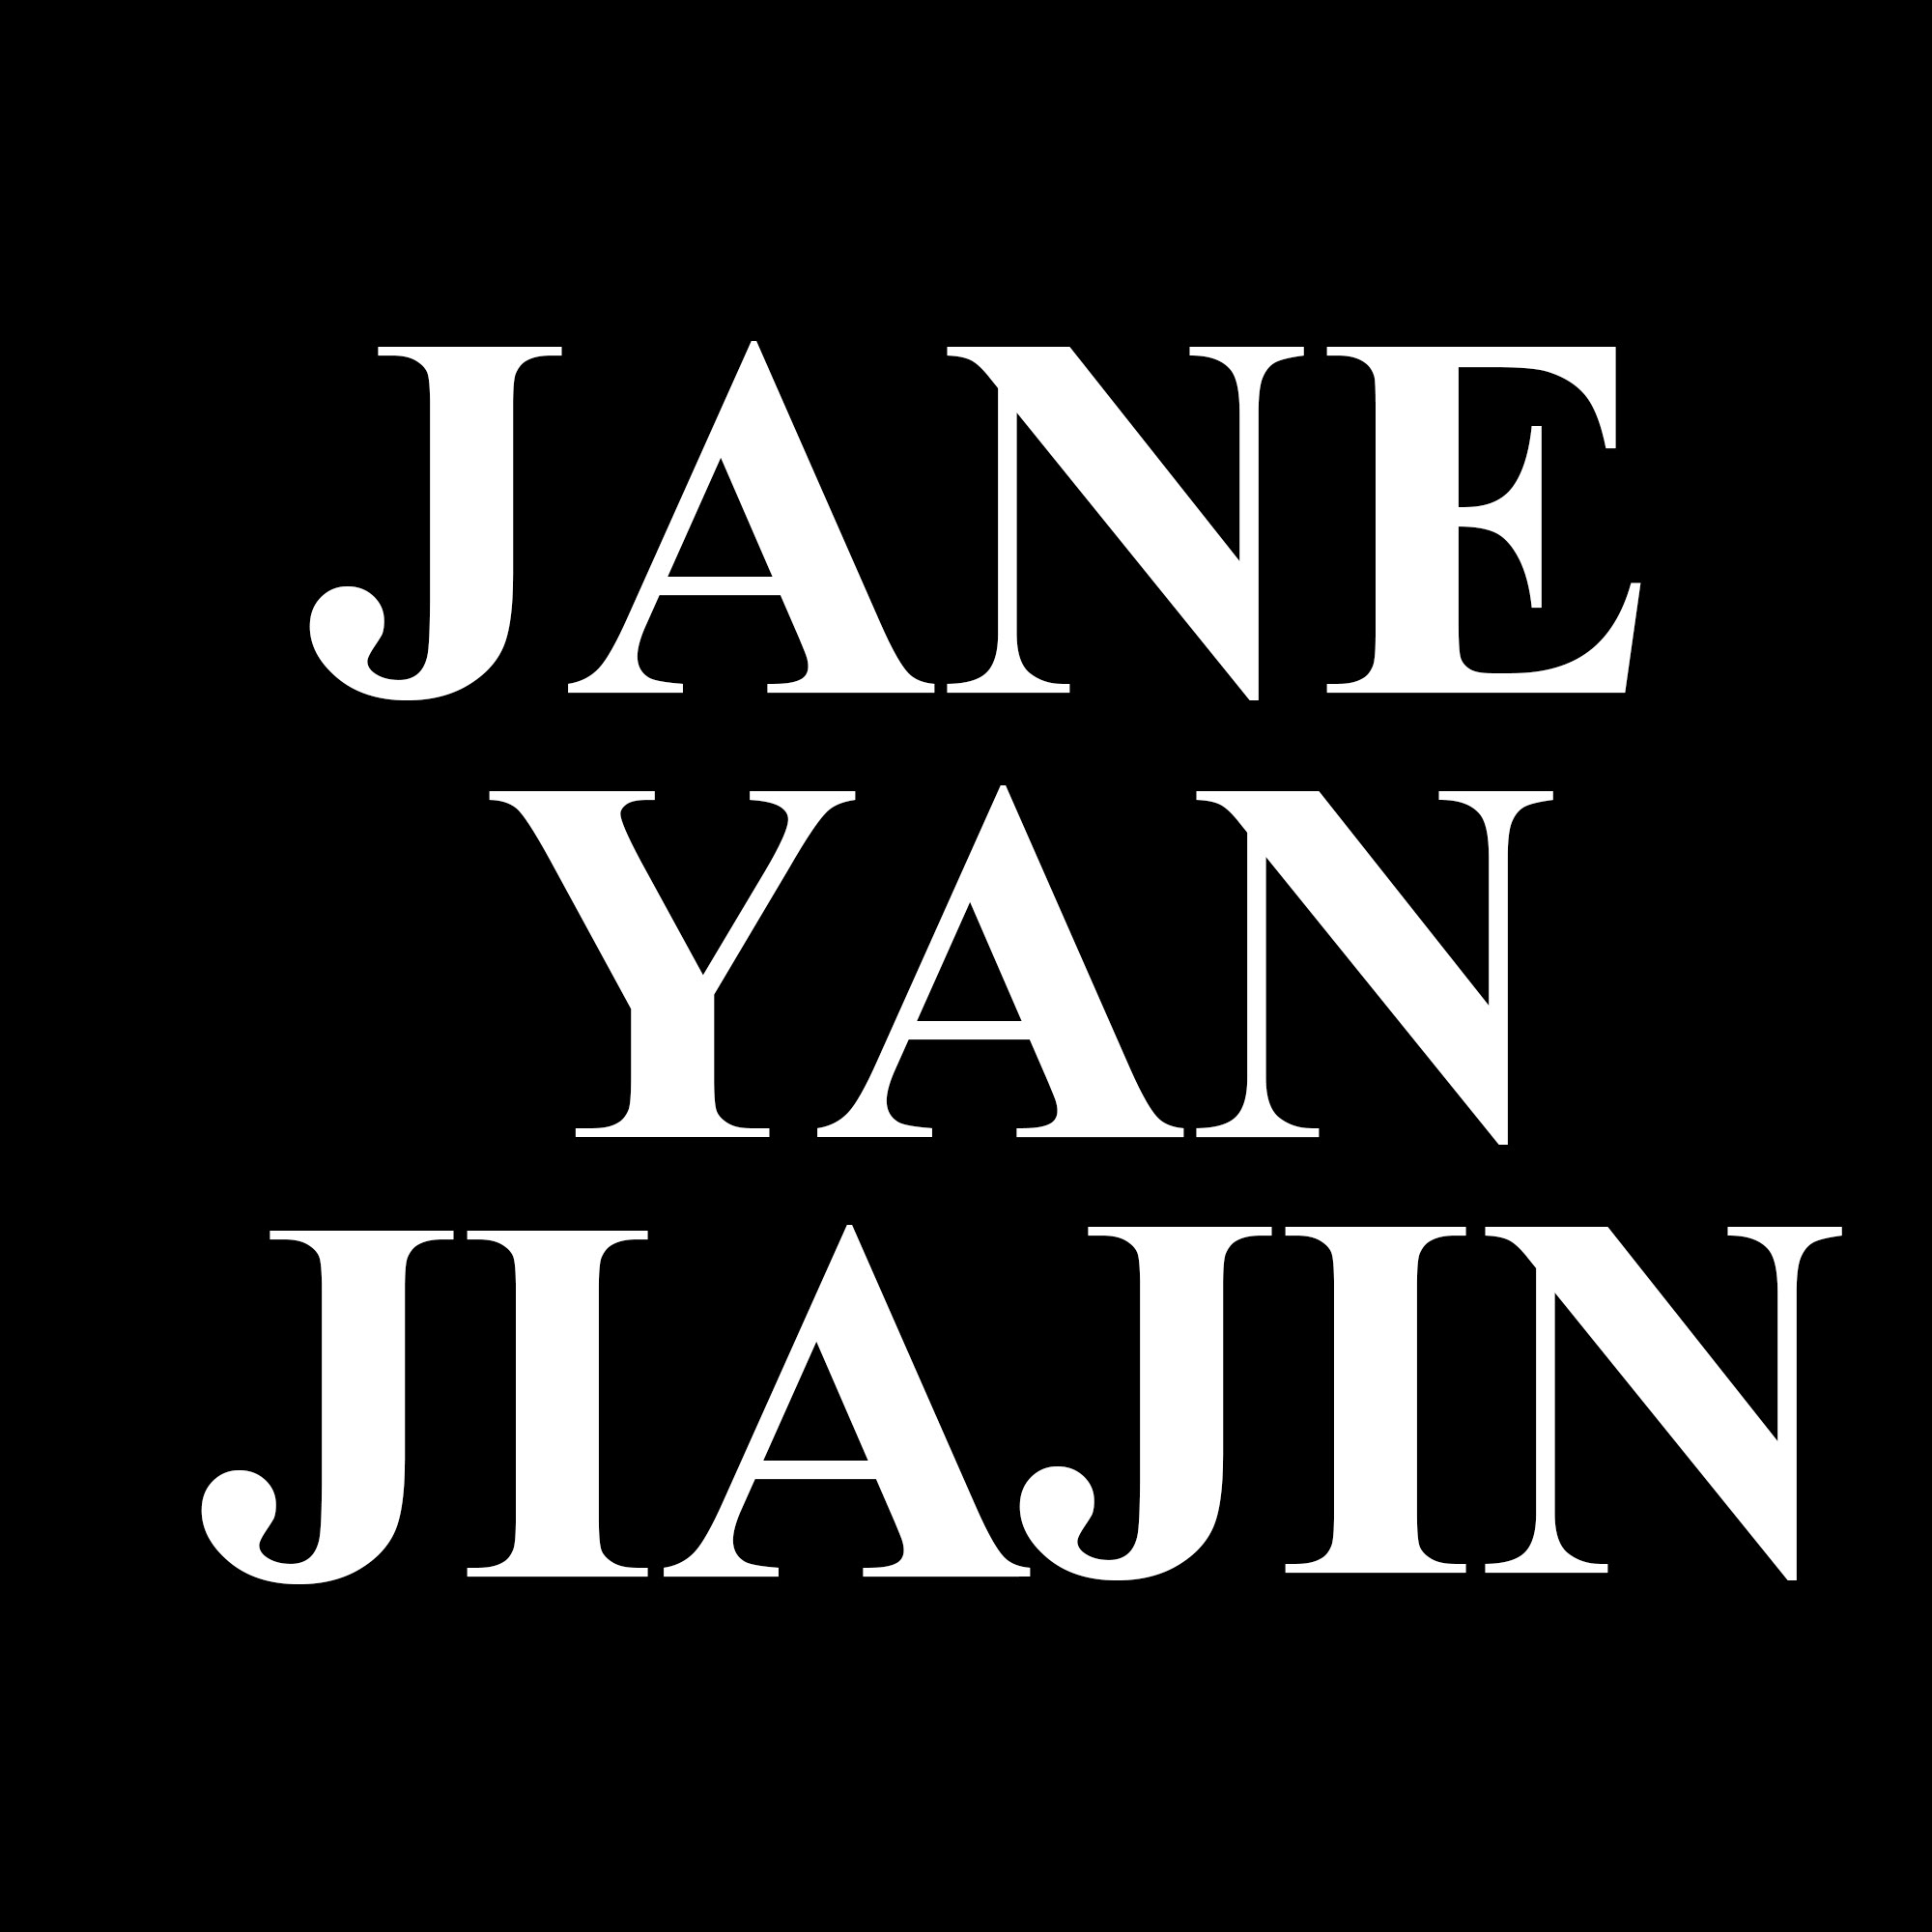 Jane Yan